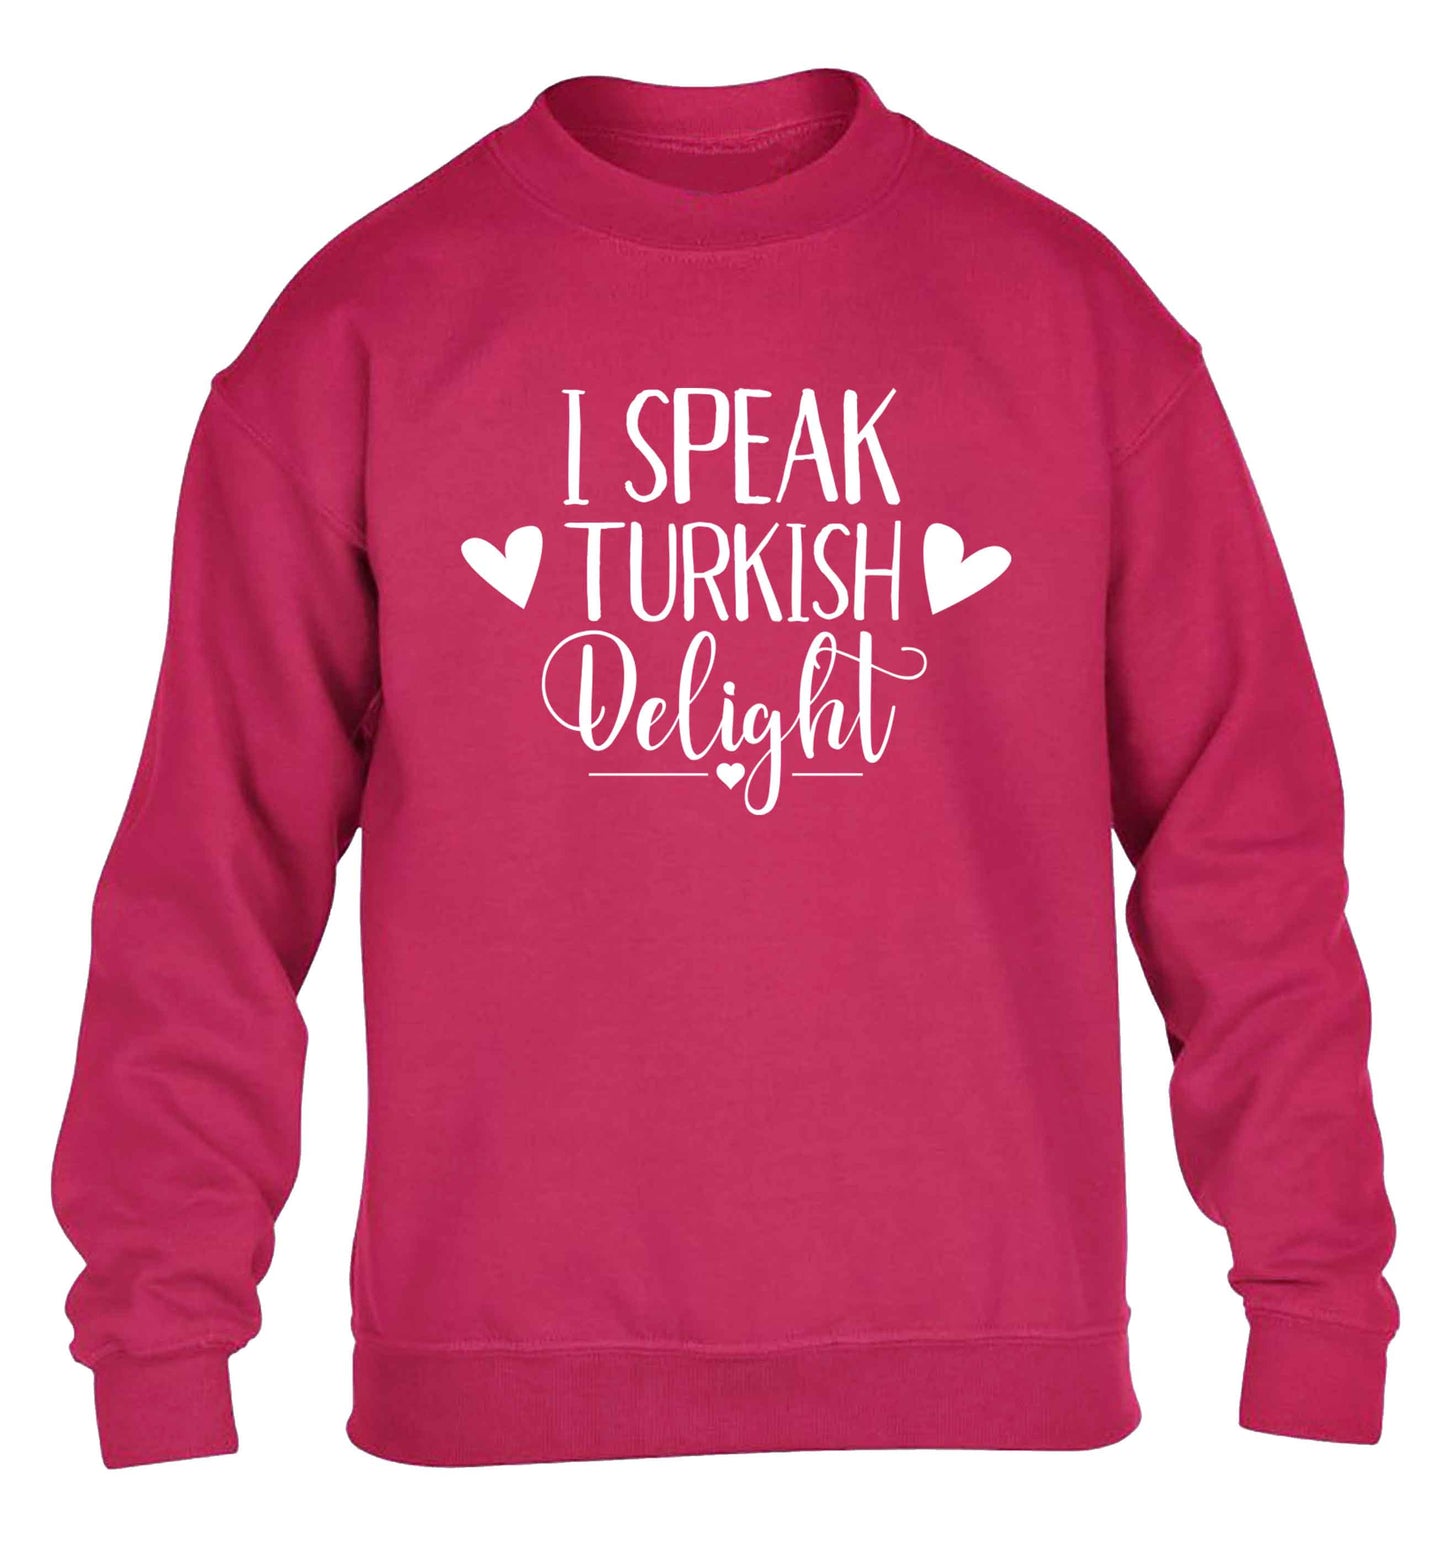 I speak turkish...delight children's pink sweater 12-13 Years